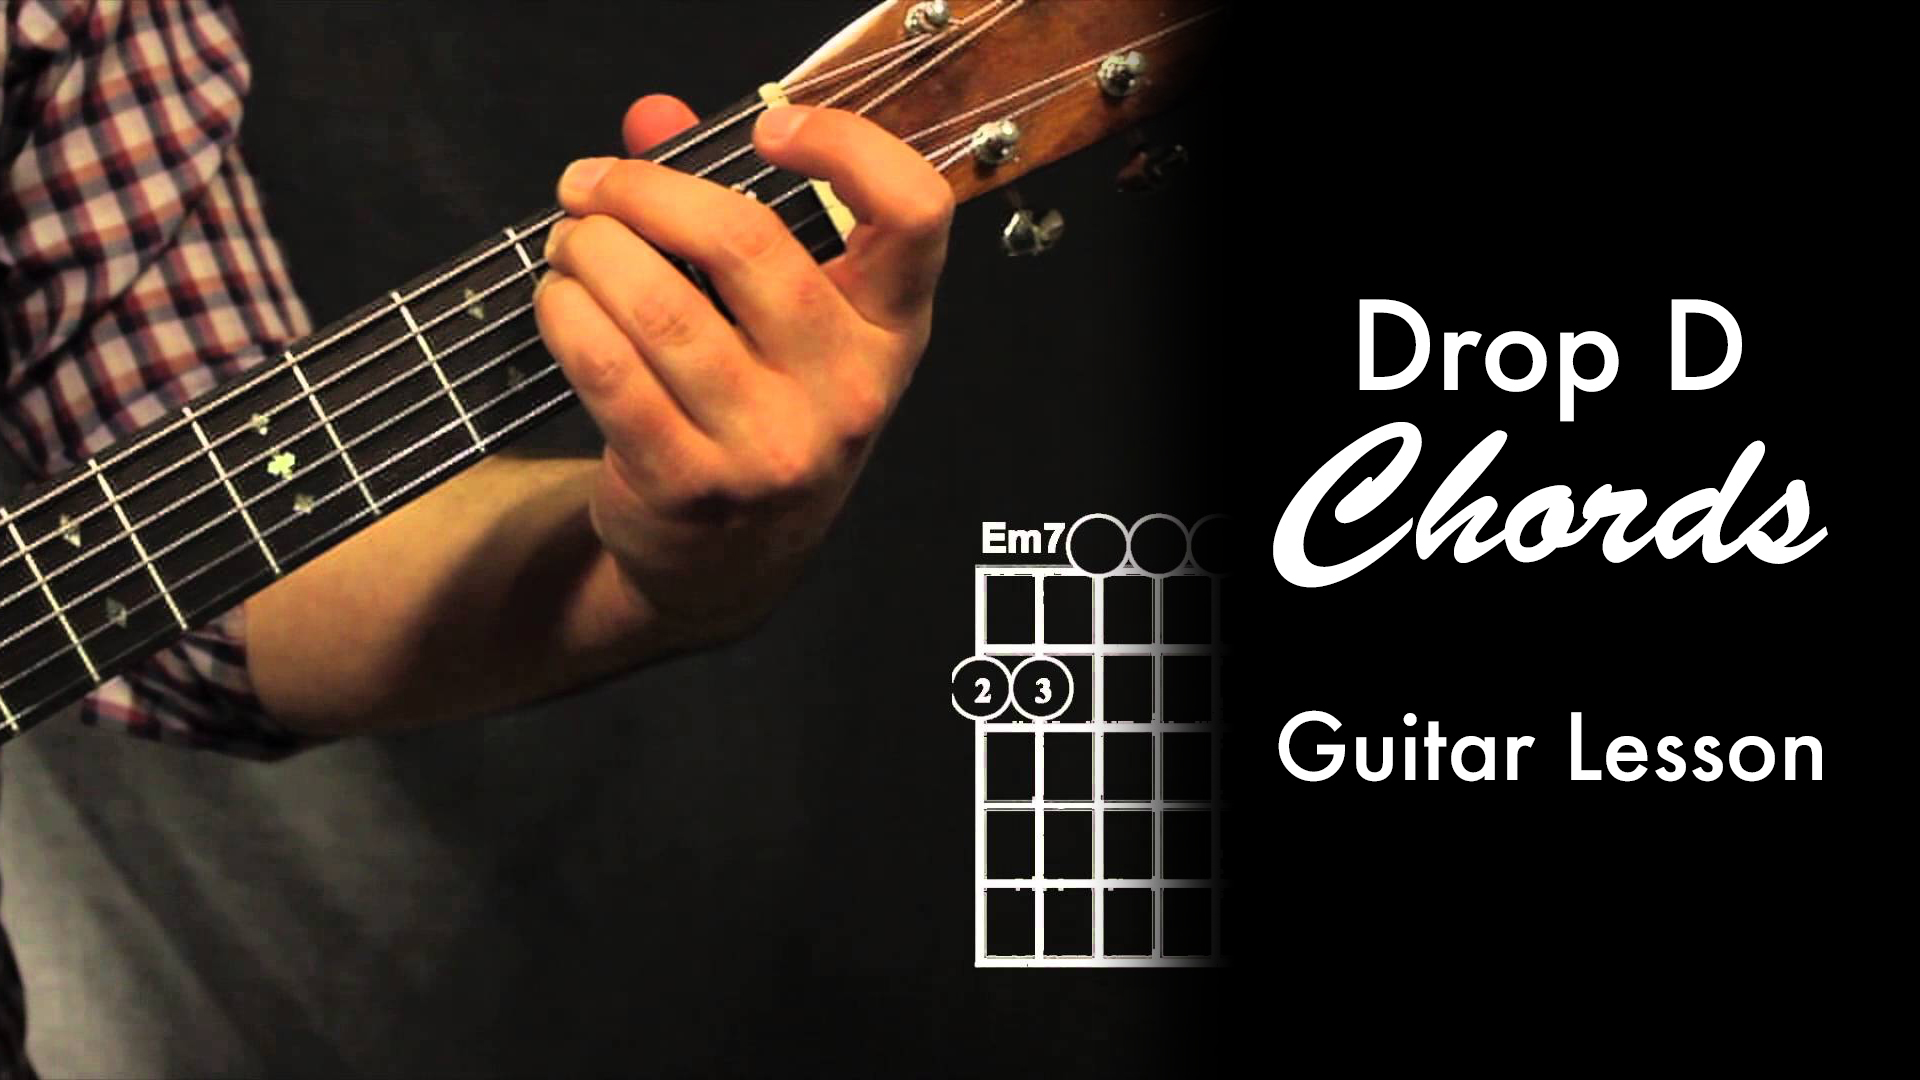 Drop D Chord Shapes • Garret's Guitar Lessons